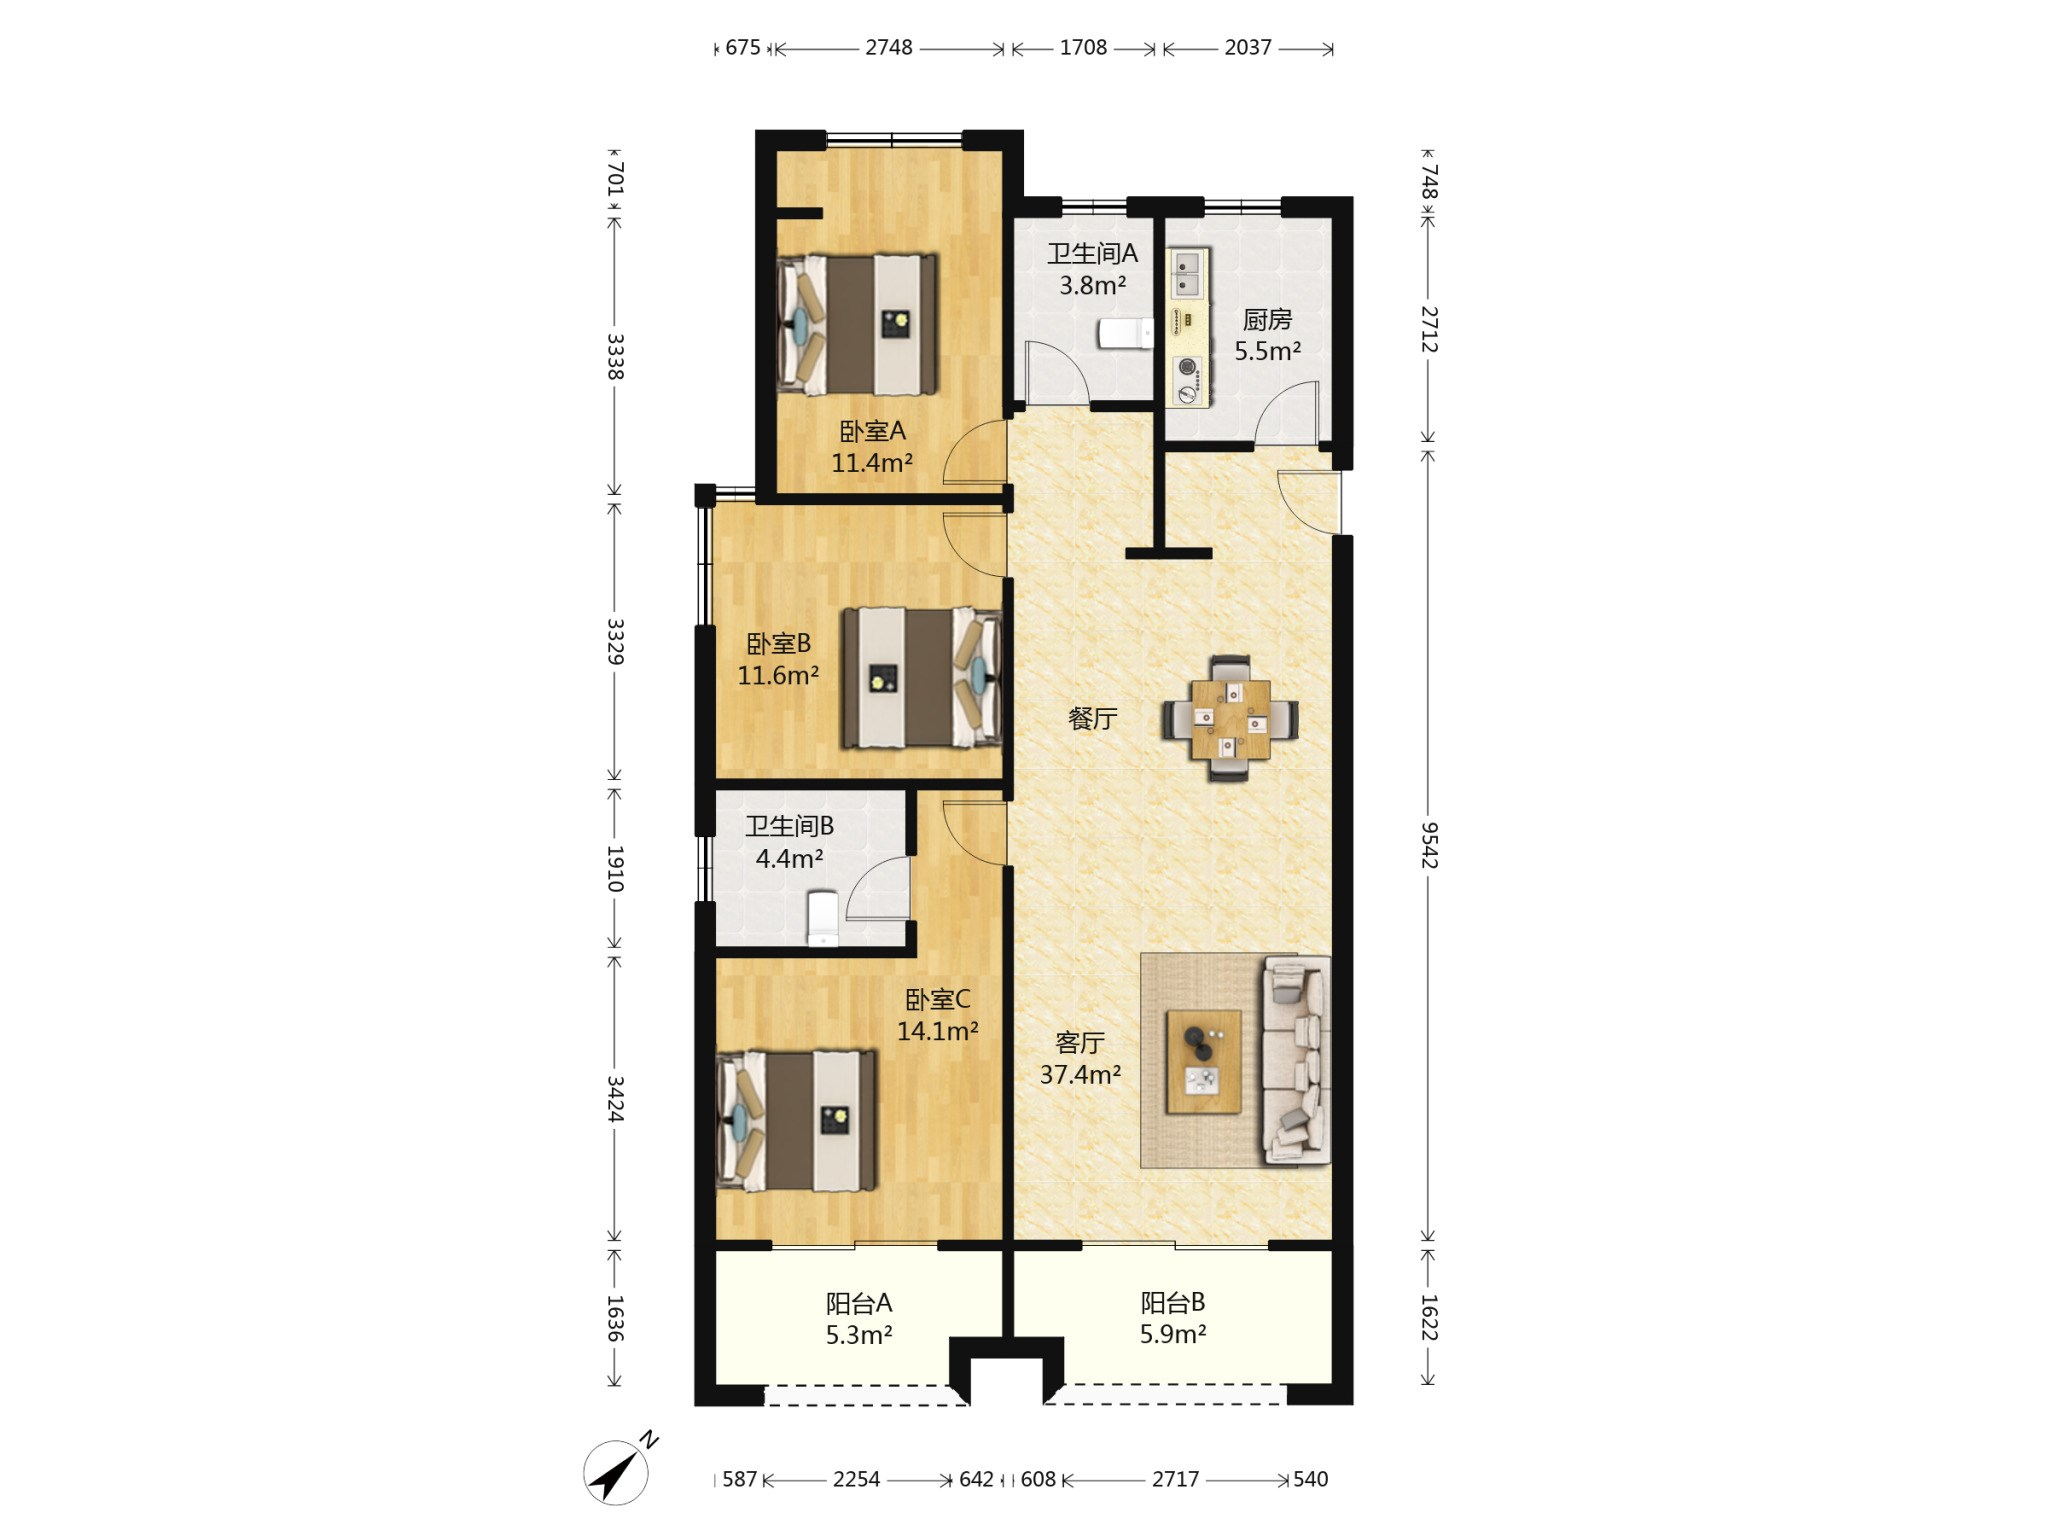 三室二厅128 平方米9532元/平米 户型建筑面积单价 多层住宅中档仔揶